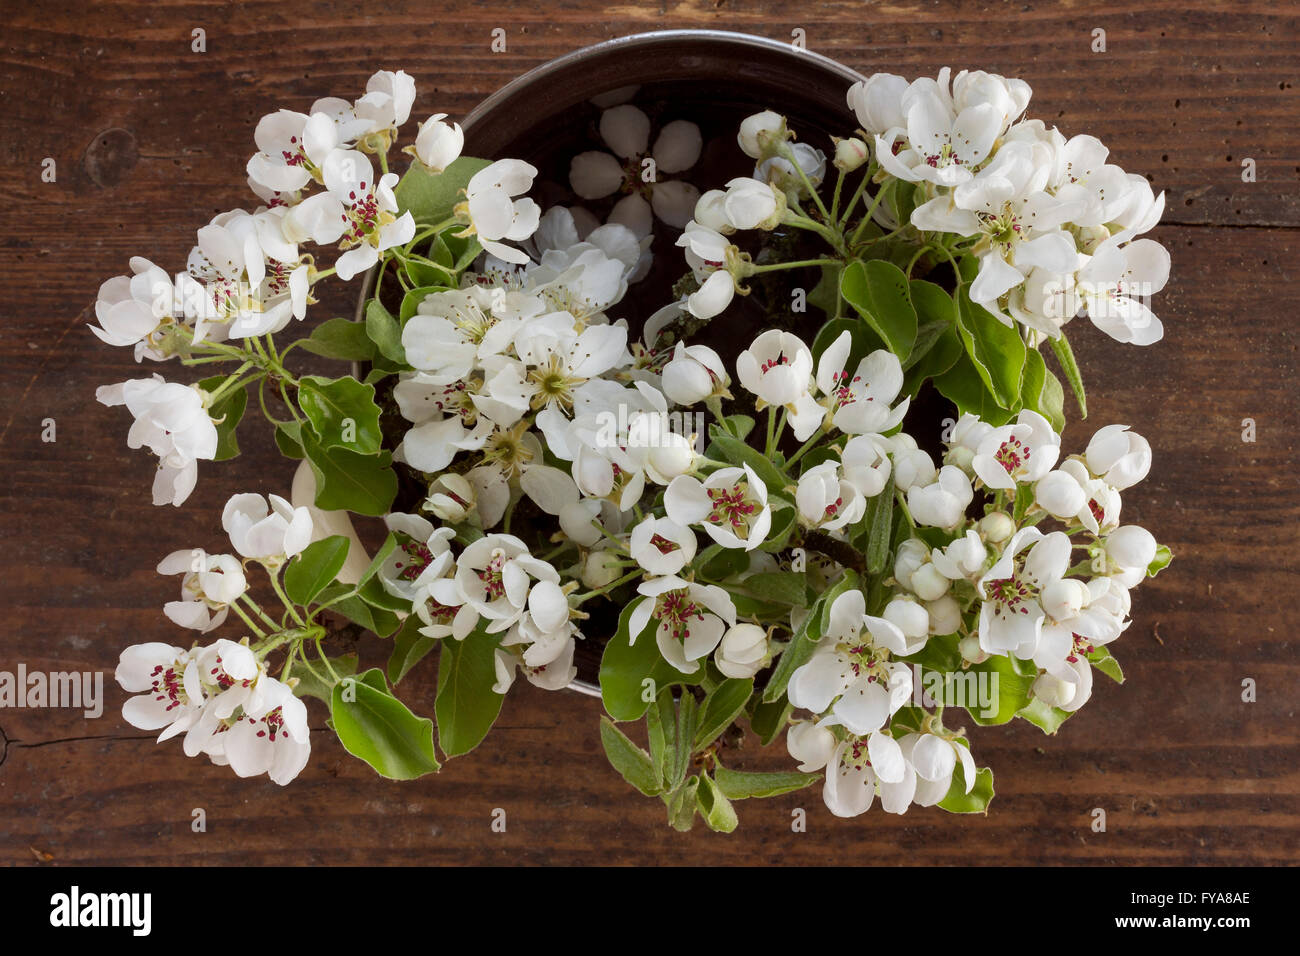 Rami freschi di un albero di mele con fiori di colore bianco e fresche foglie verdi in una pentola di cottura su sfondo di legno come immagine a molla Foto Stock